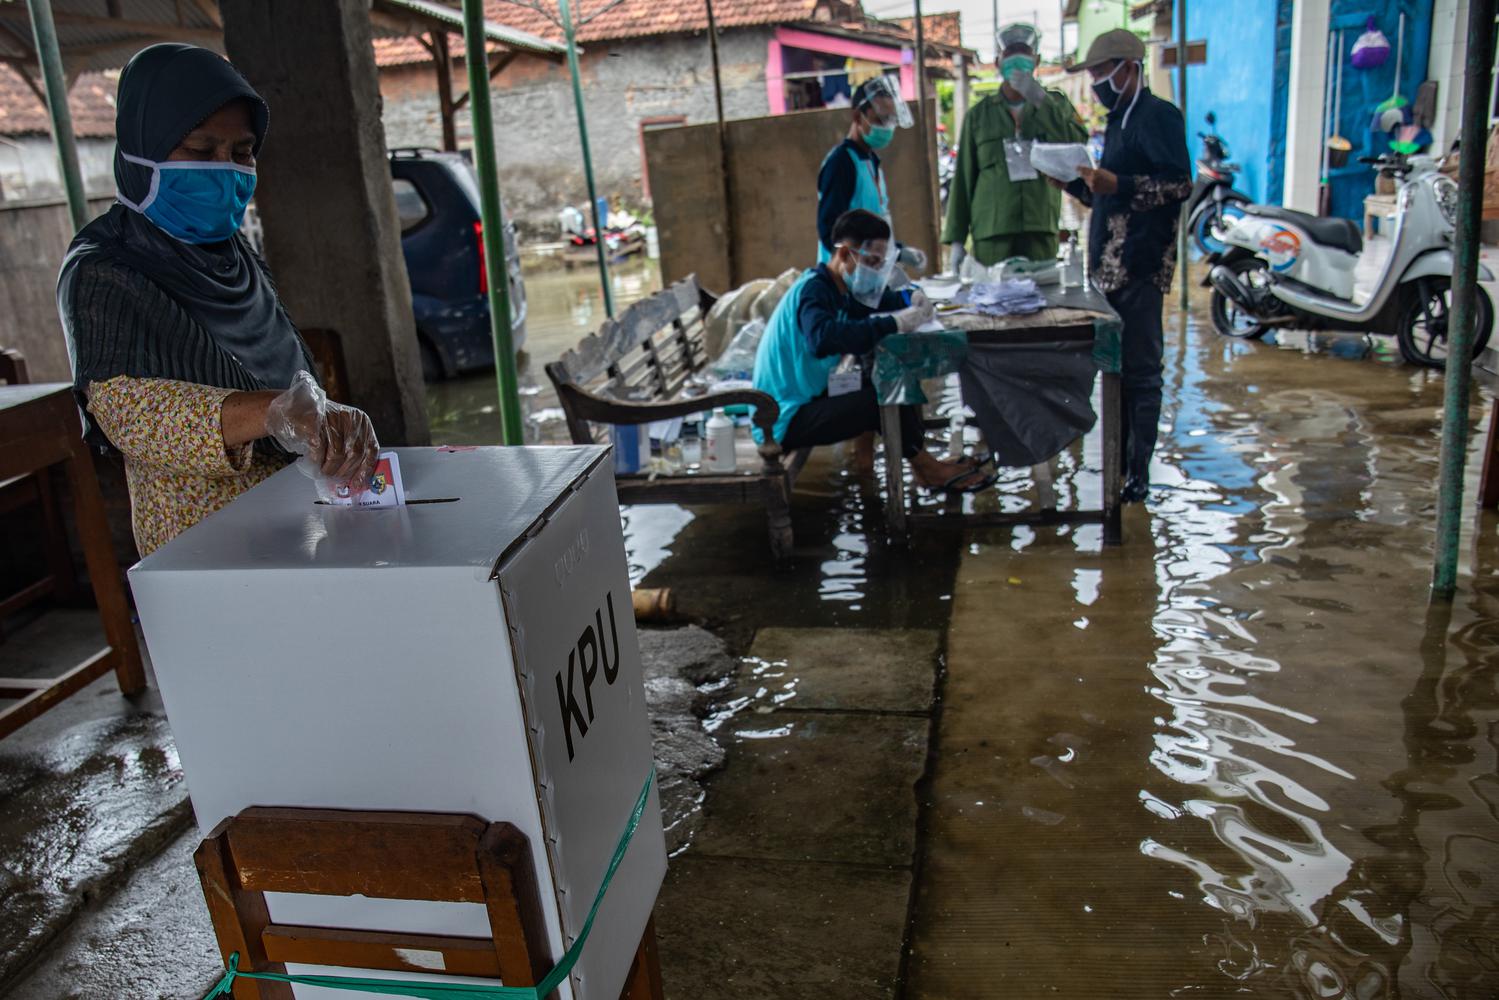 Seorang warga memasukkan surat suara ke dalam kotak suara Pilkada Kabupaten Demak 2020 di TPS 12 yang tergenang air rob di Desa Tridonorejo, Bonang, Demak, Jawa Tengah, Rabu (9/12/2020). Sejumlah TPS di pesisir setempat tergenang air rob dengan ketinggian bervariasi antara 10-30 sentimeter.